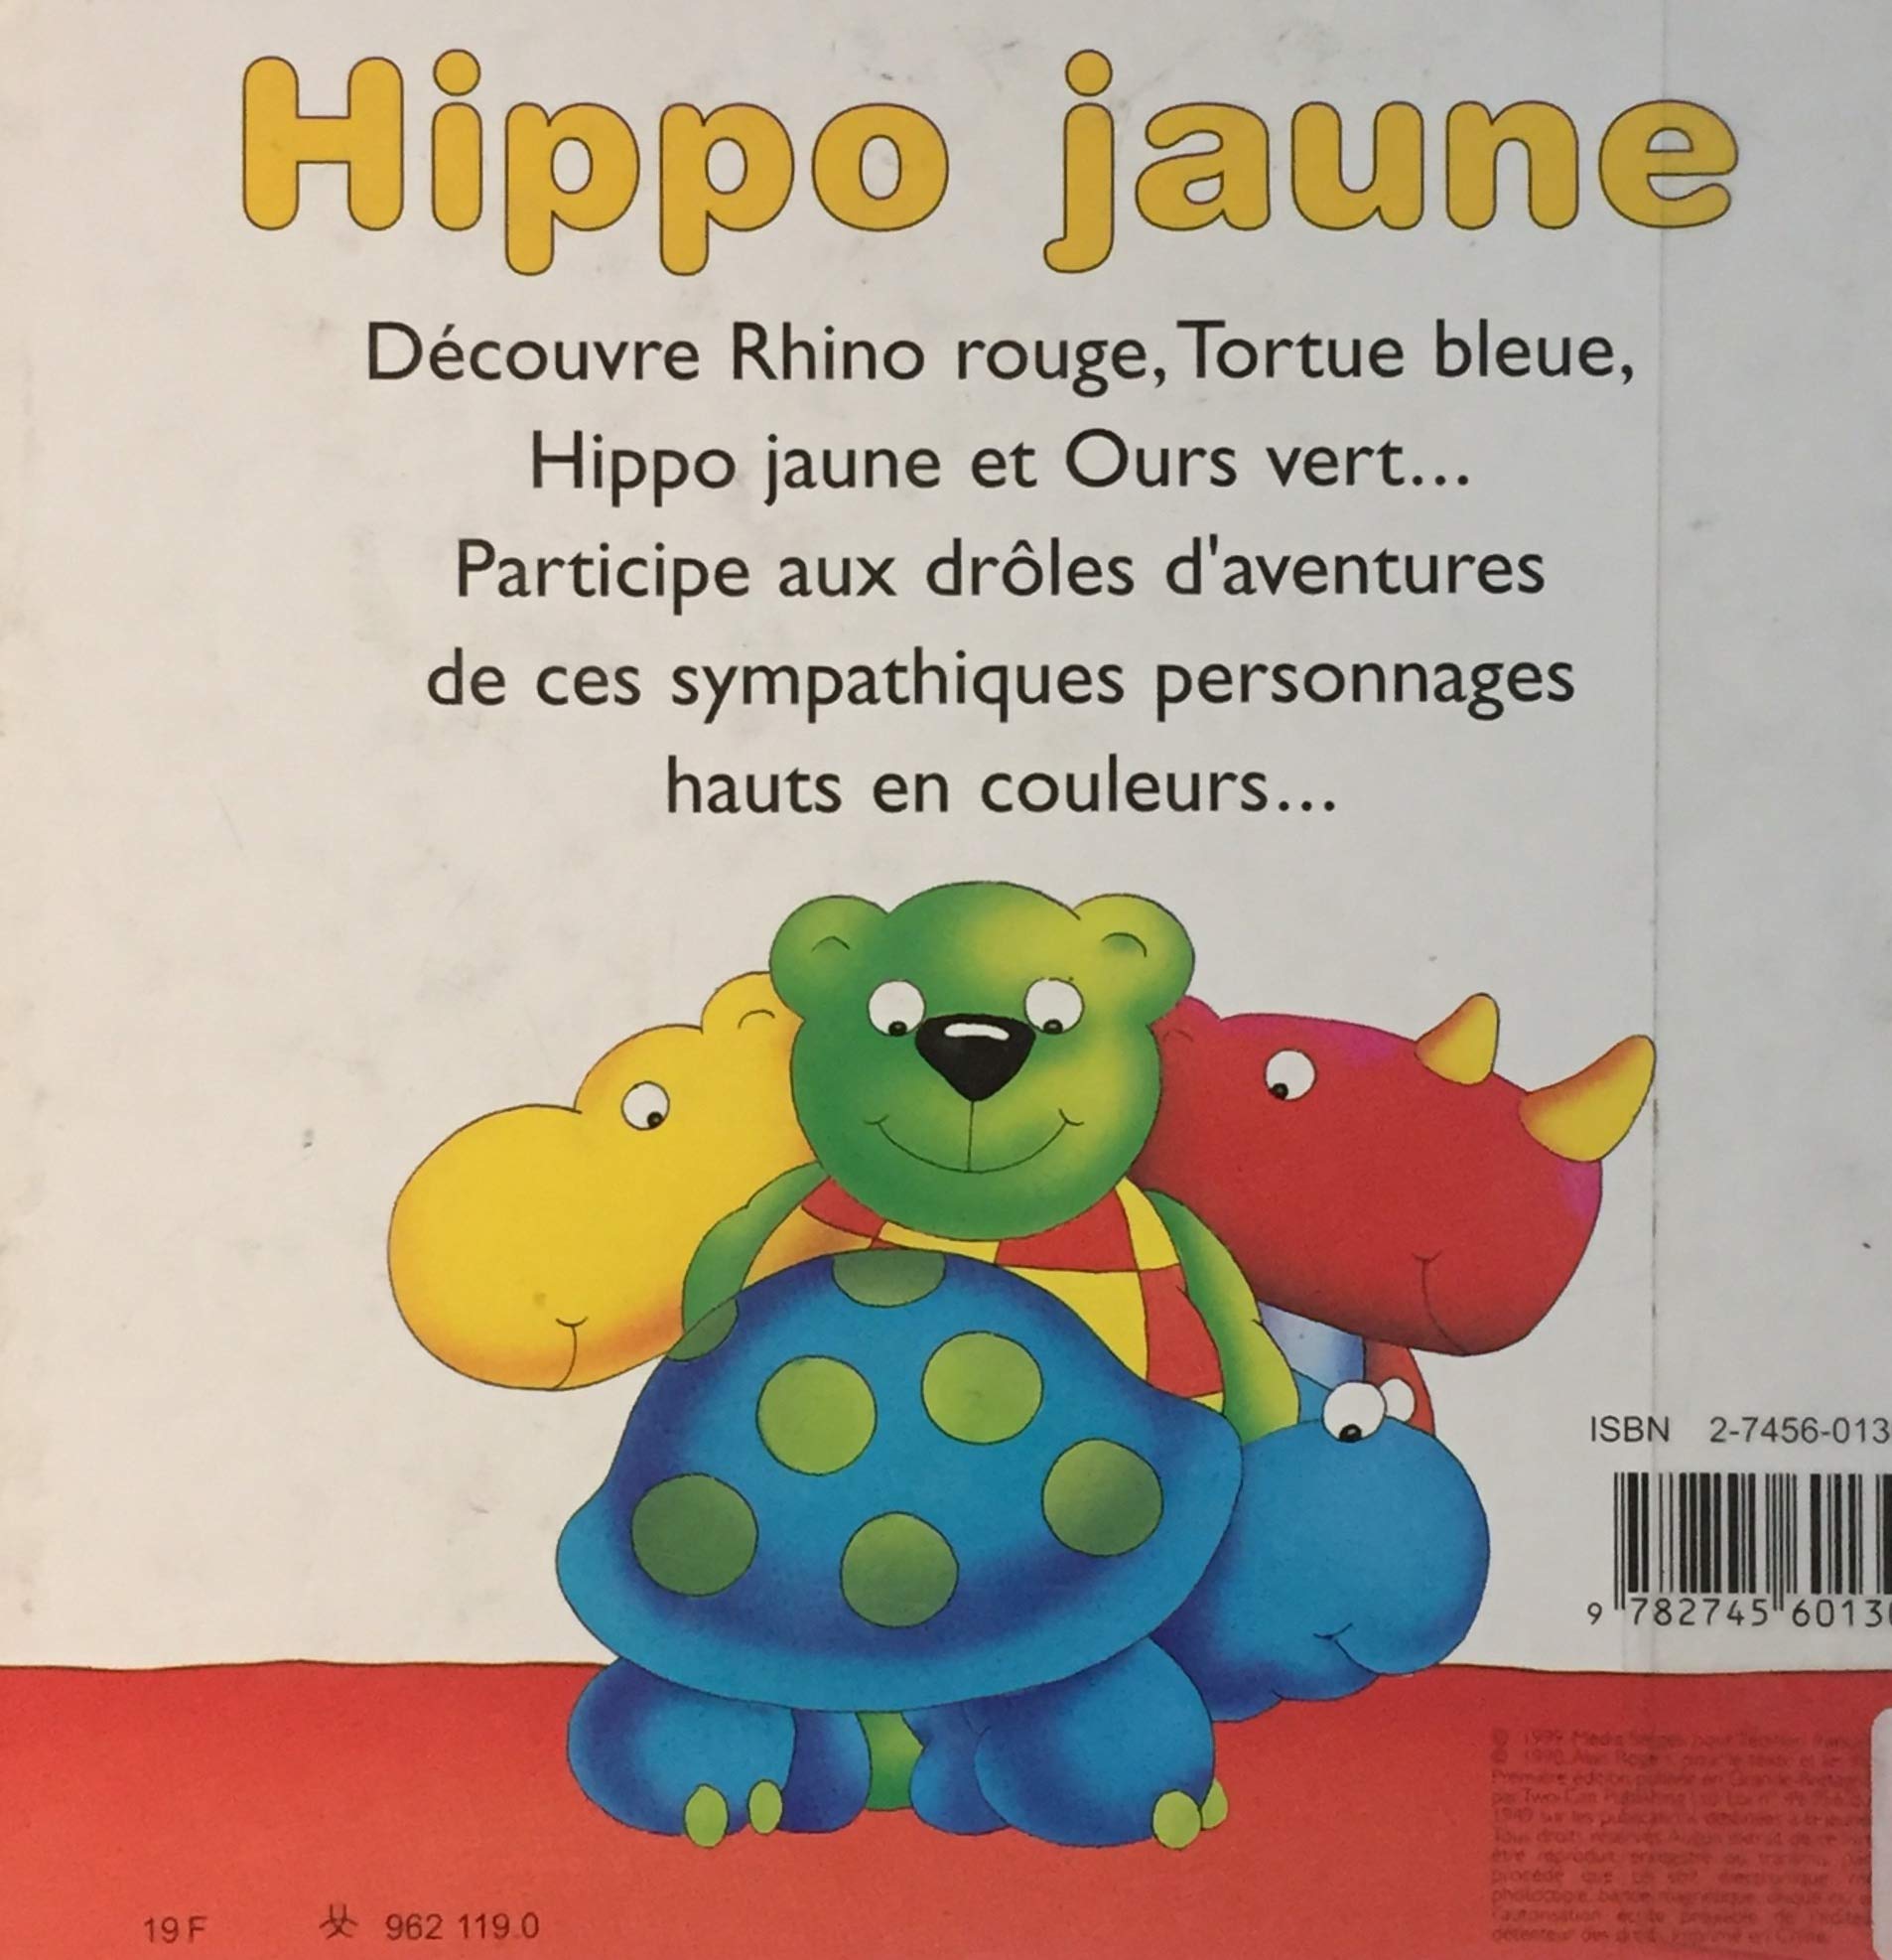 Hippo jaune